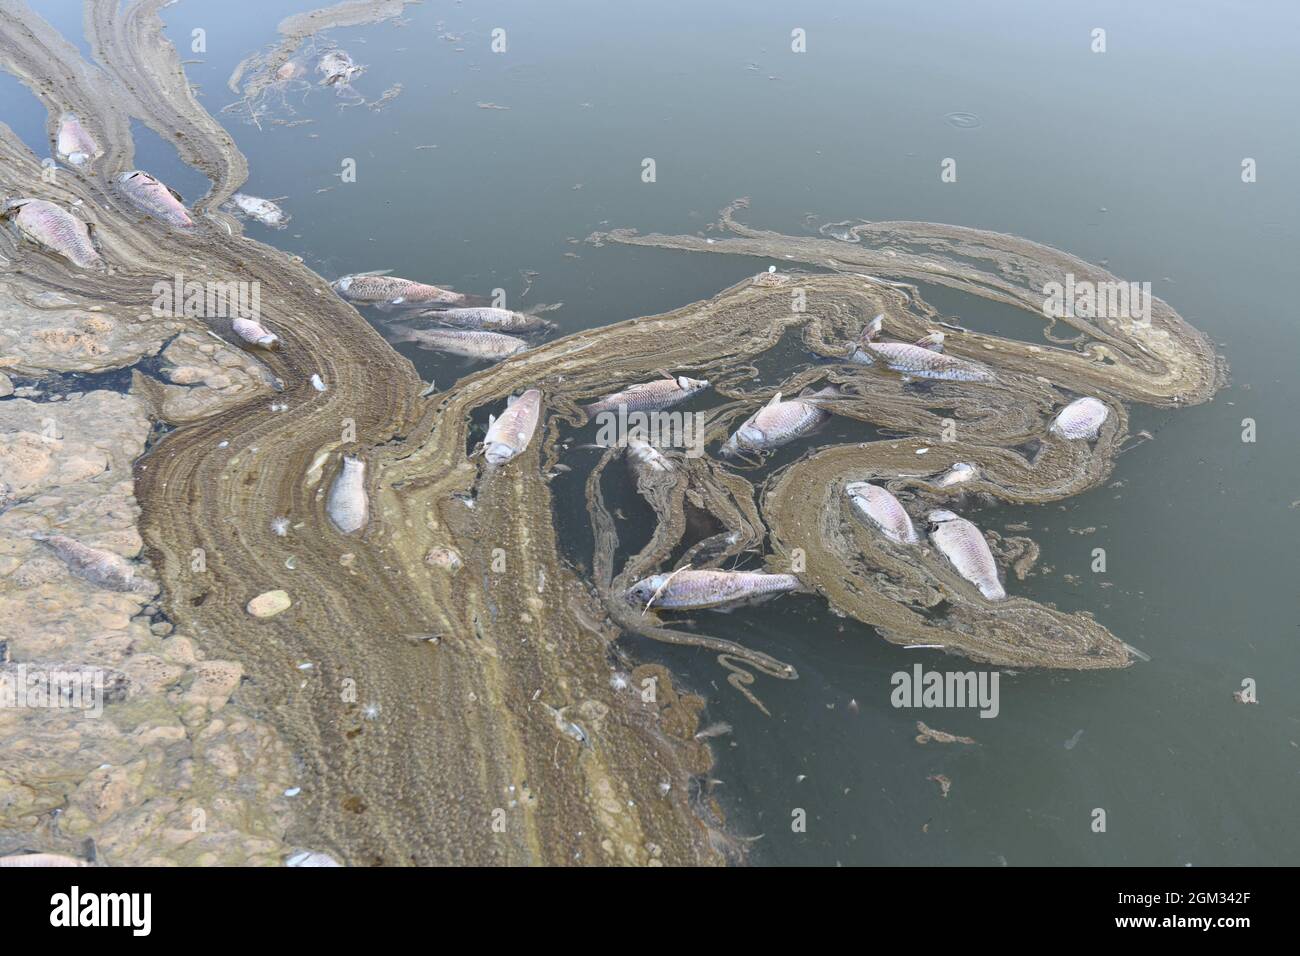 Nella città di touristik di Van, nella regione orientale dell'Anatolia in Turchia, i pesci sono morti spaventati. A causa del riscaldamento globale e della siccità, Kockopru, situato nel distretto di Ercis, ha un livello d'acqua estremamente basso. Accanto alle micro-alghe che proliferano nell'acqua al livello dell'acqua in discesa, si riduce ulteriormente, ostruendo le branchie di questi pesci, causando il declino del pesce nelle dighe. Foto di Ali Ihsan Ozturk/Demiroren Visual Media/ABACAPRESS.COM Foto Stock